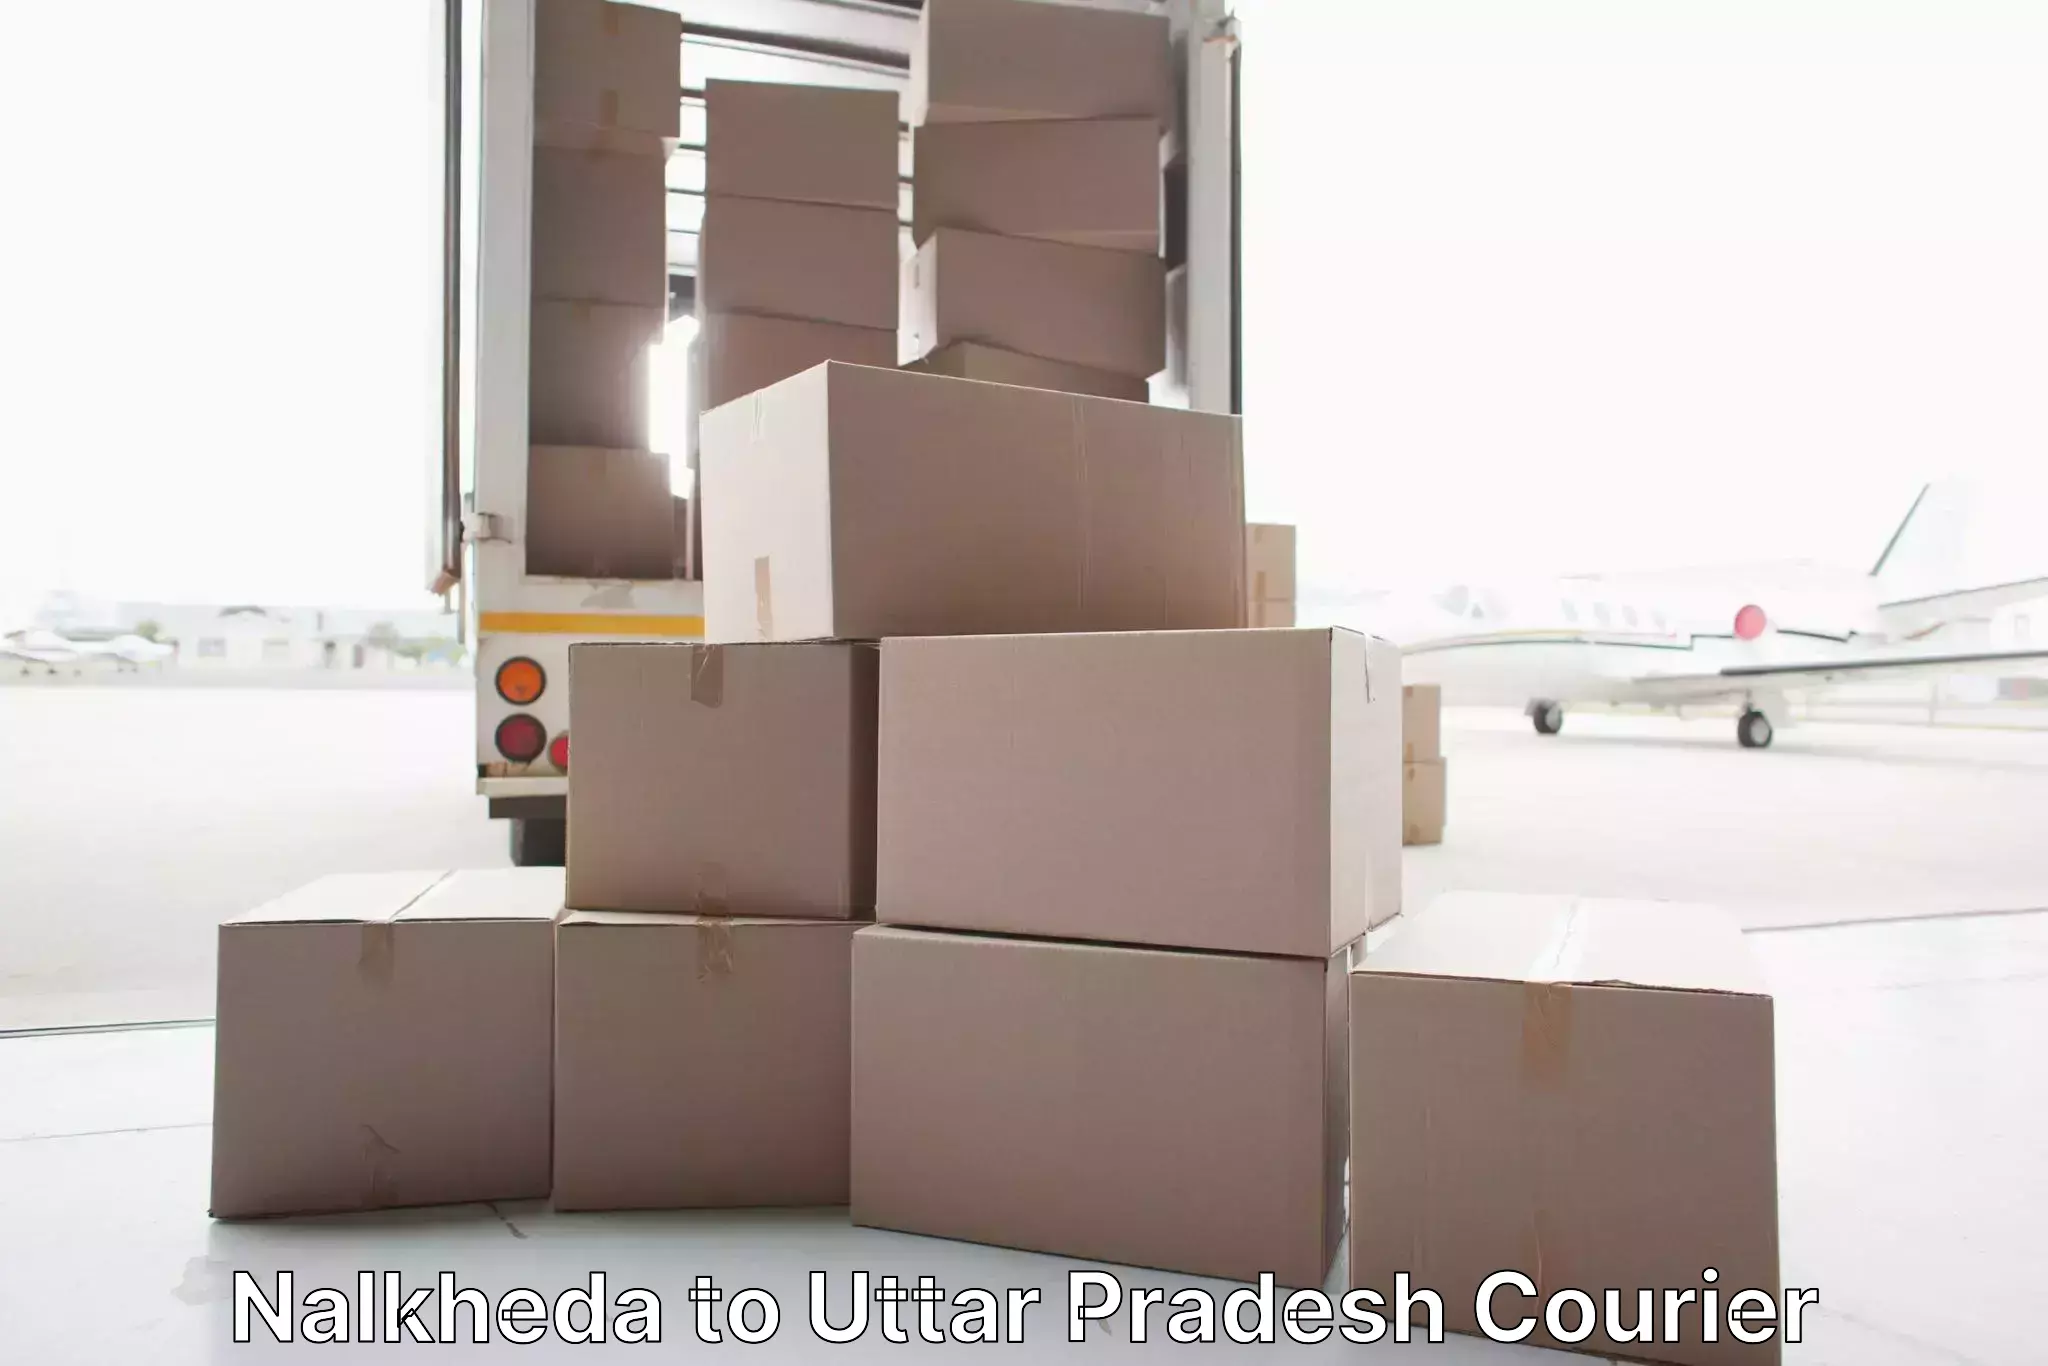 Home goods moving company Nalkheda to Parora